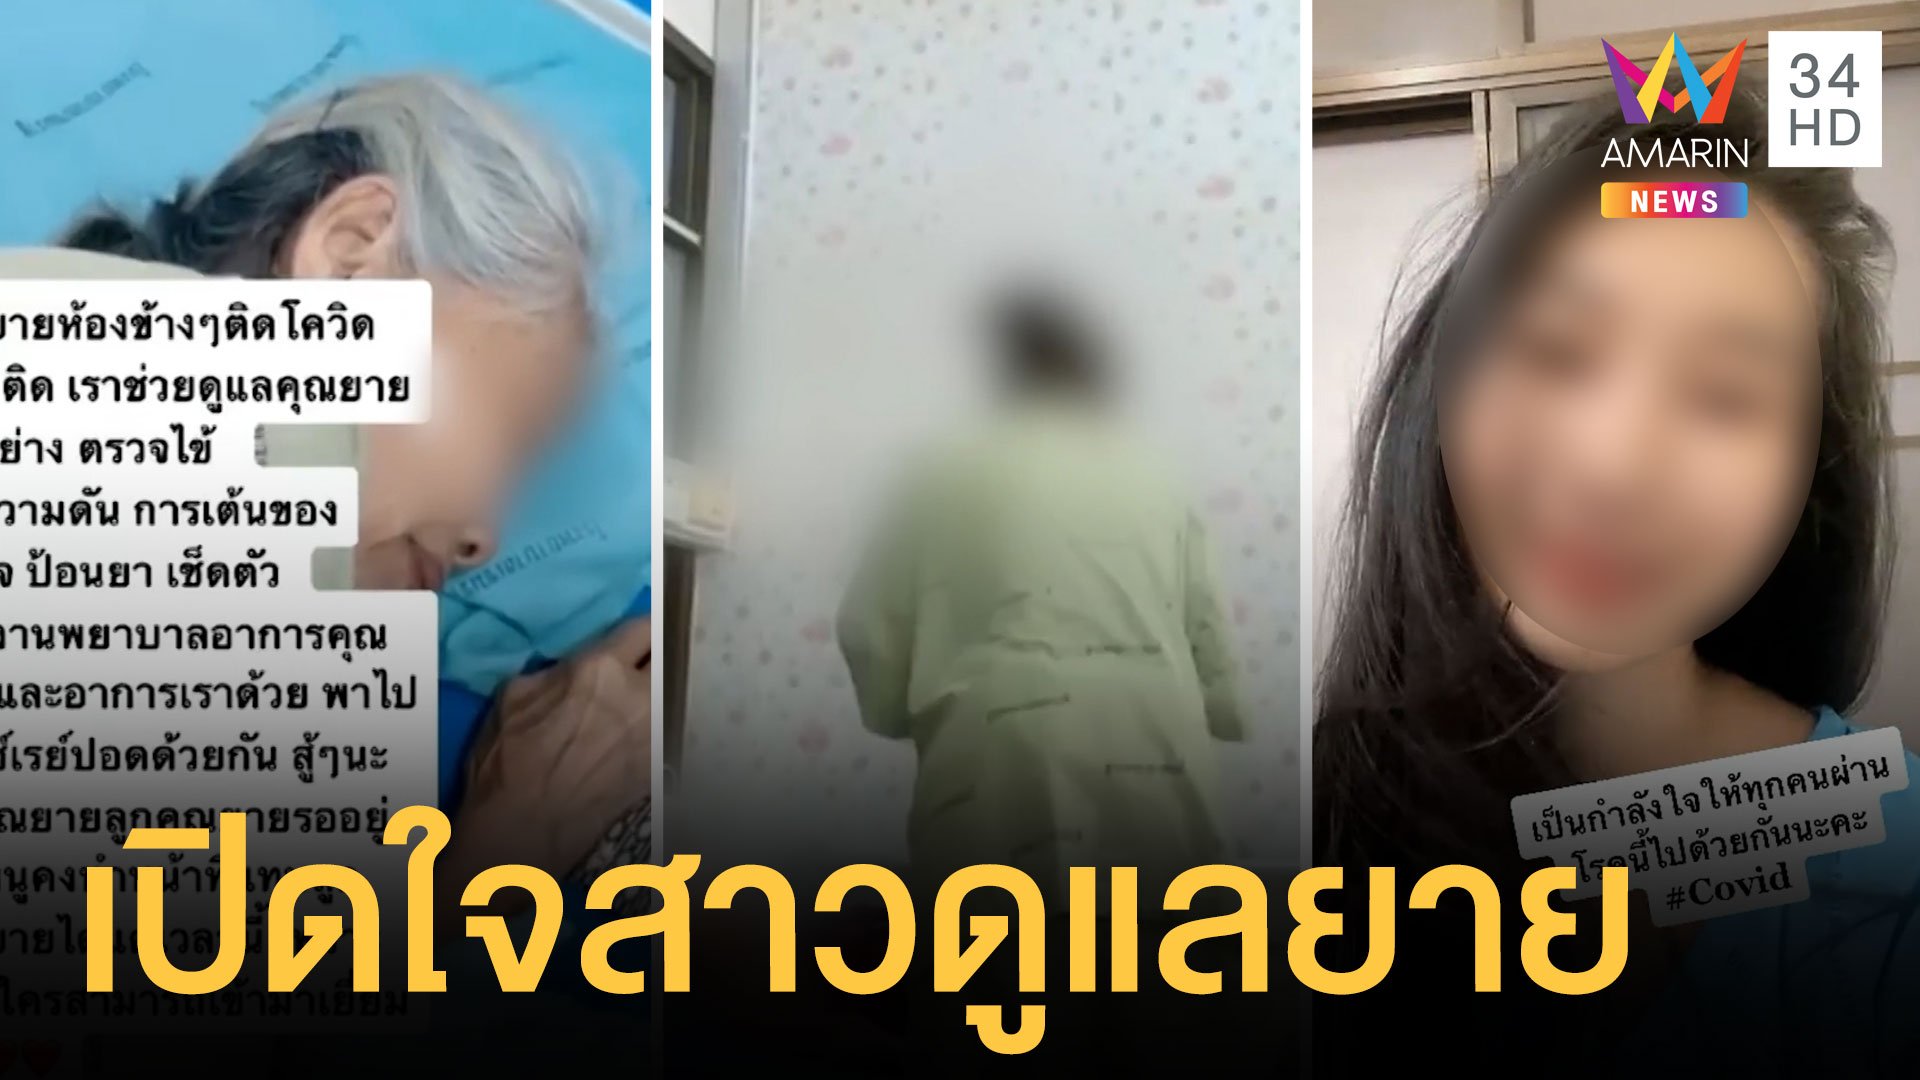 เปิดใจสาวป่วยโควิดดูแลยายแทนลูกหลาน ก่อนอาการทรุด | ข่าวเที่ยงอมรินทร์ | 25 เม.ย. 64 | AMARIN TVHD34